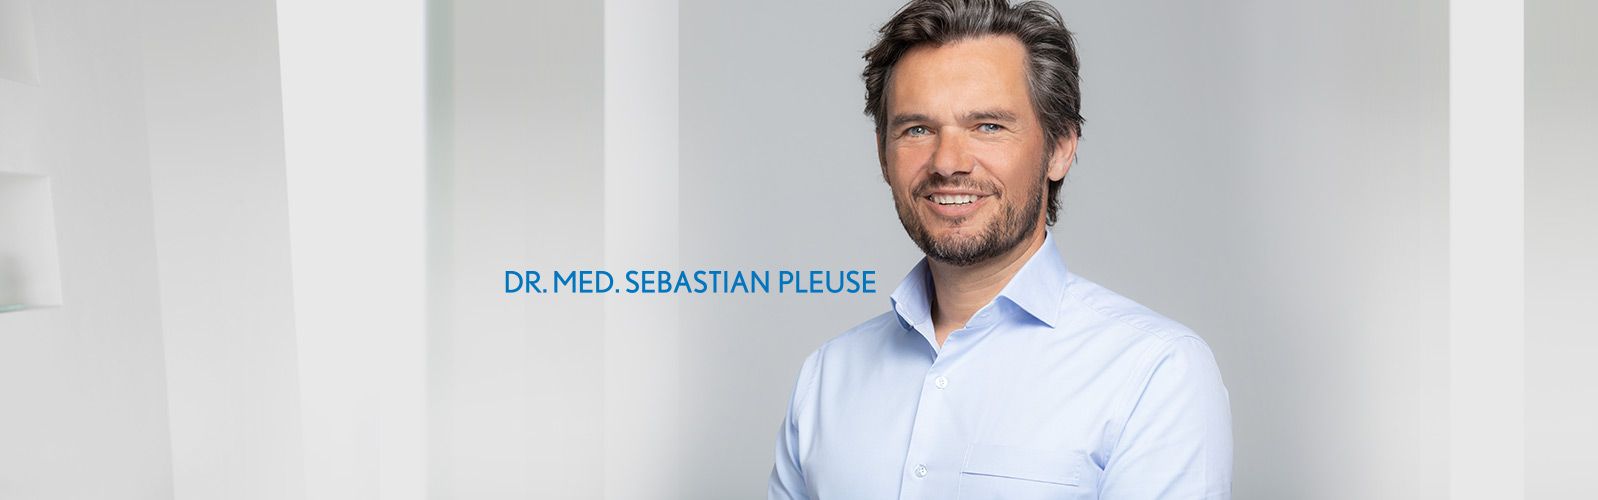 Dr. med. Sebastian Pleuse Produkte